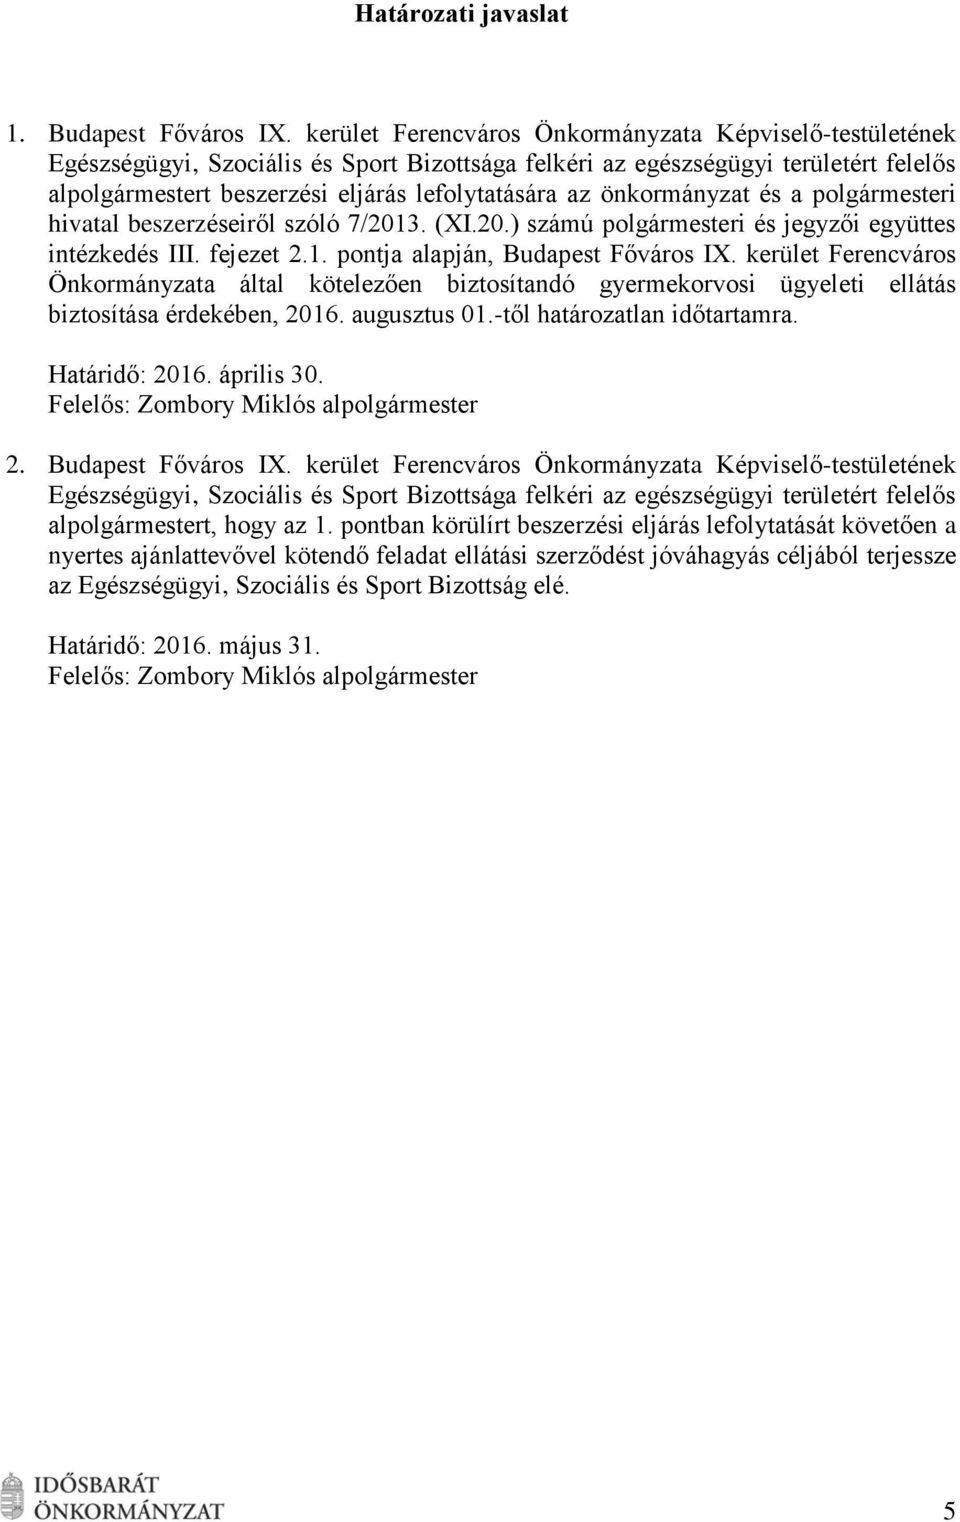 önkormányzat és a polgármesteri hivatal beszerzéseiről szóló 7/2013. (I.20.) számú polgármesteri és jegyzői együttes intézkedés III. fejezet 2.1. pontja alapján, Budapest Főváros I.